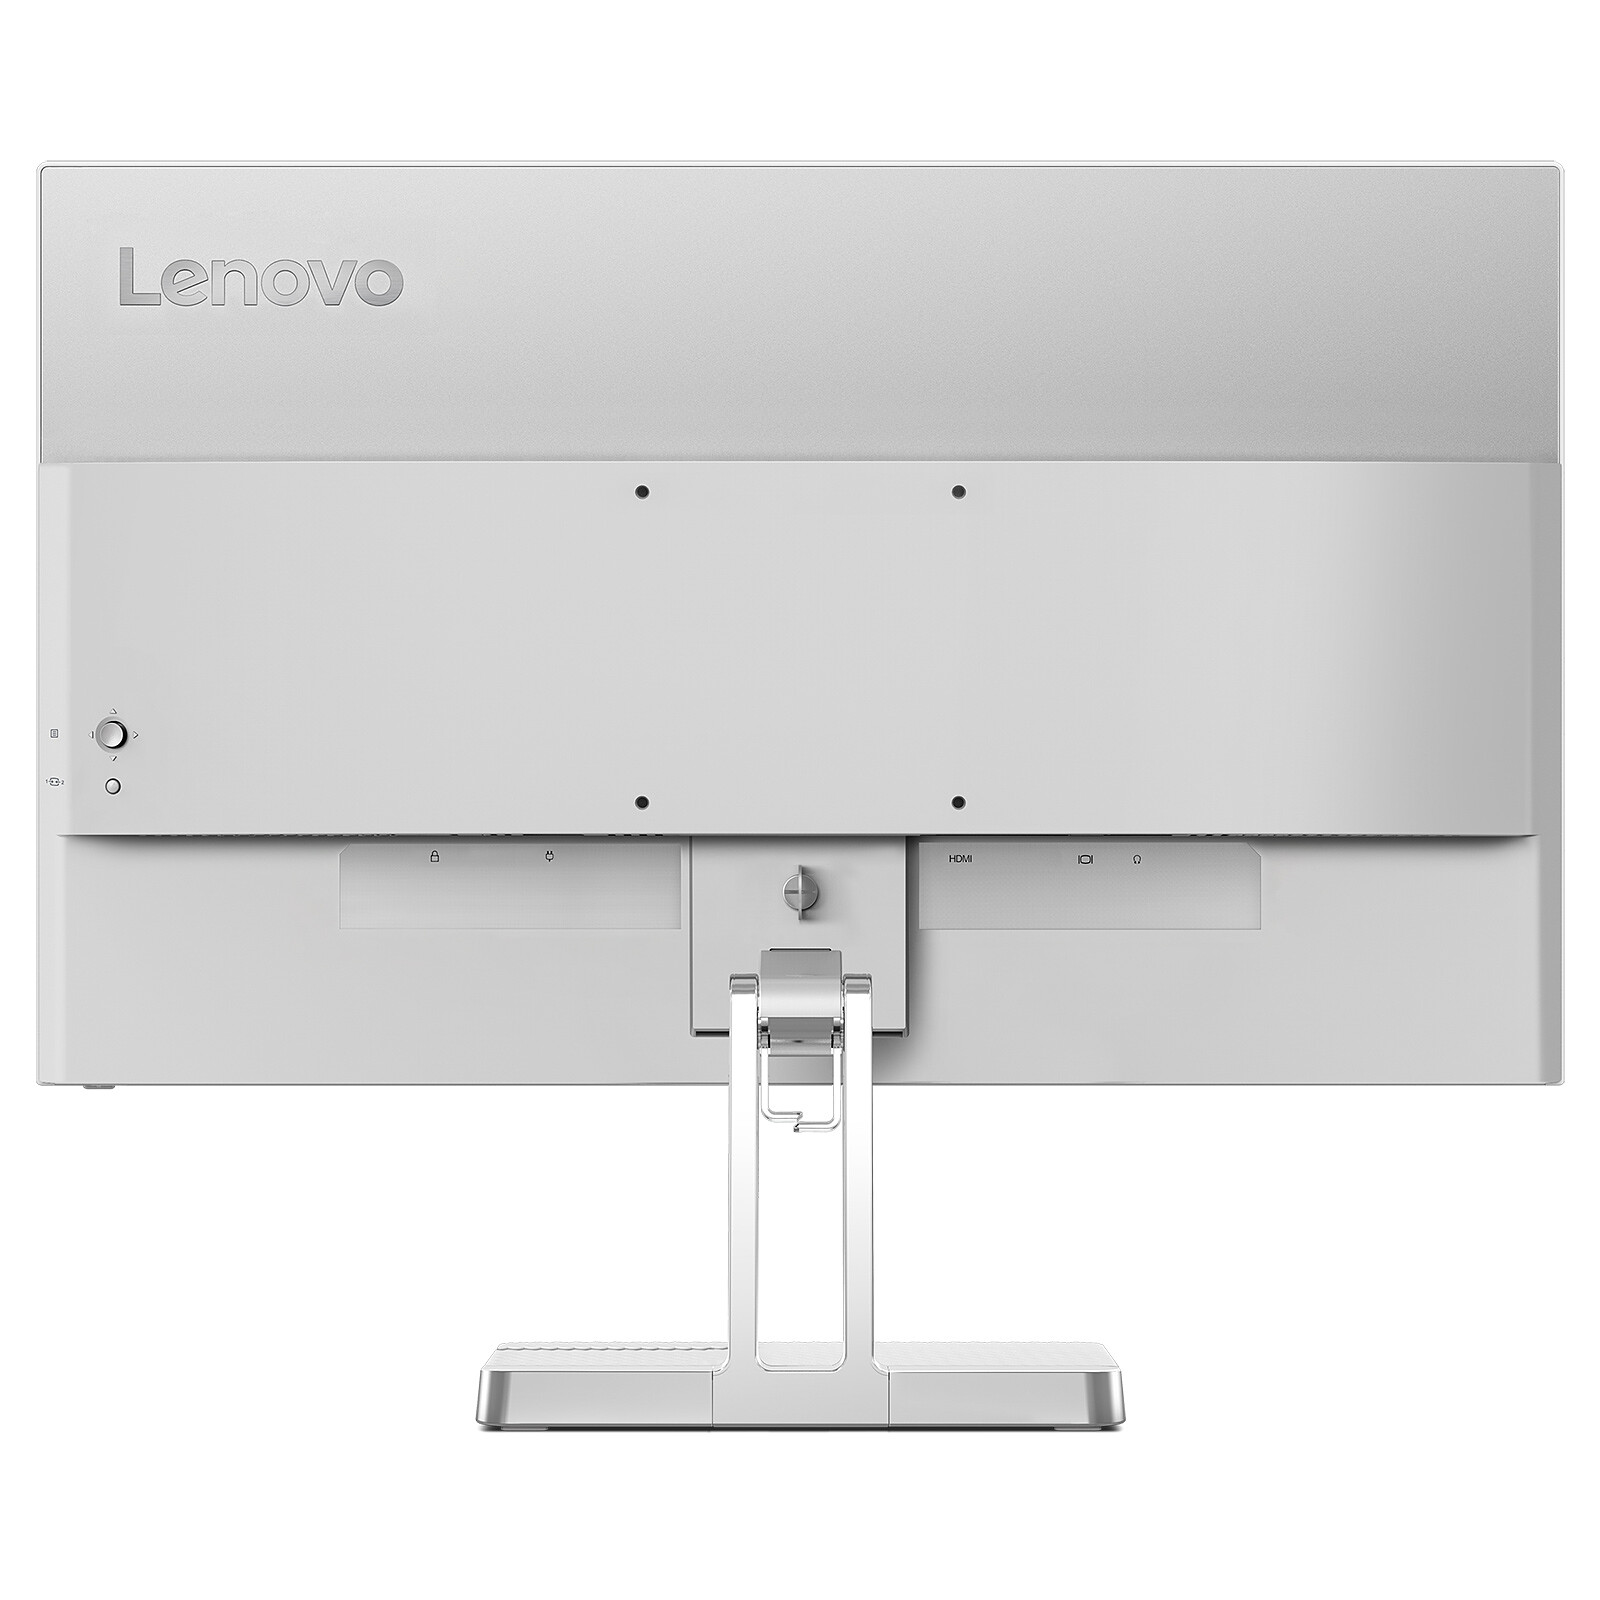 Ecran ordinateur LENOVO 24 pouces L24